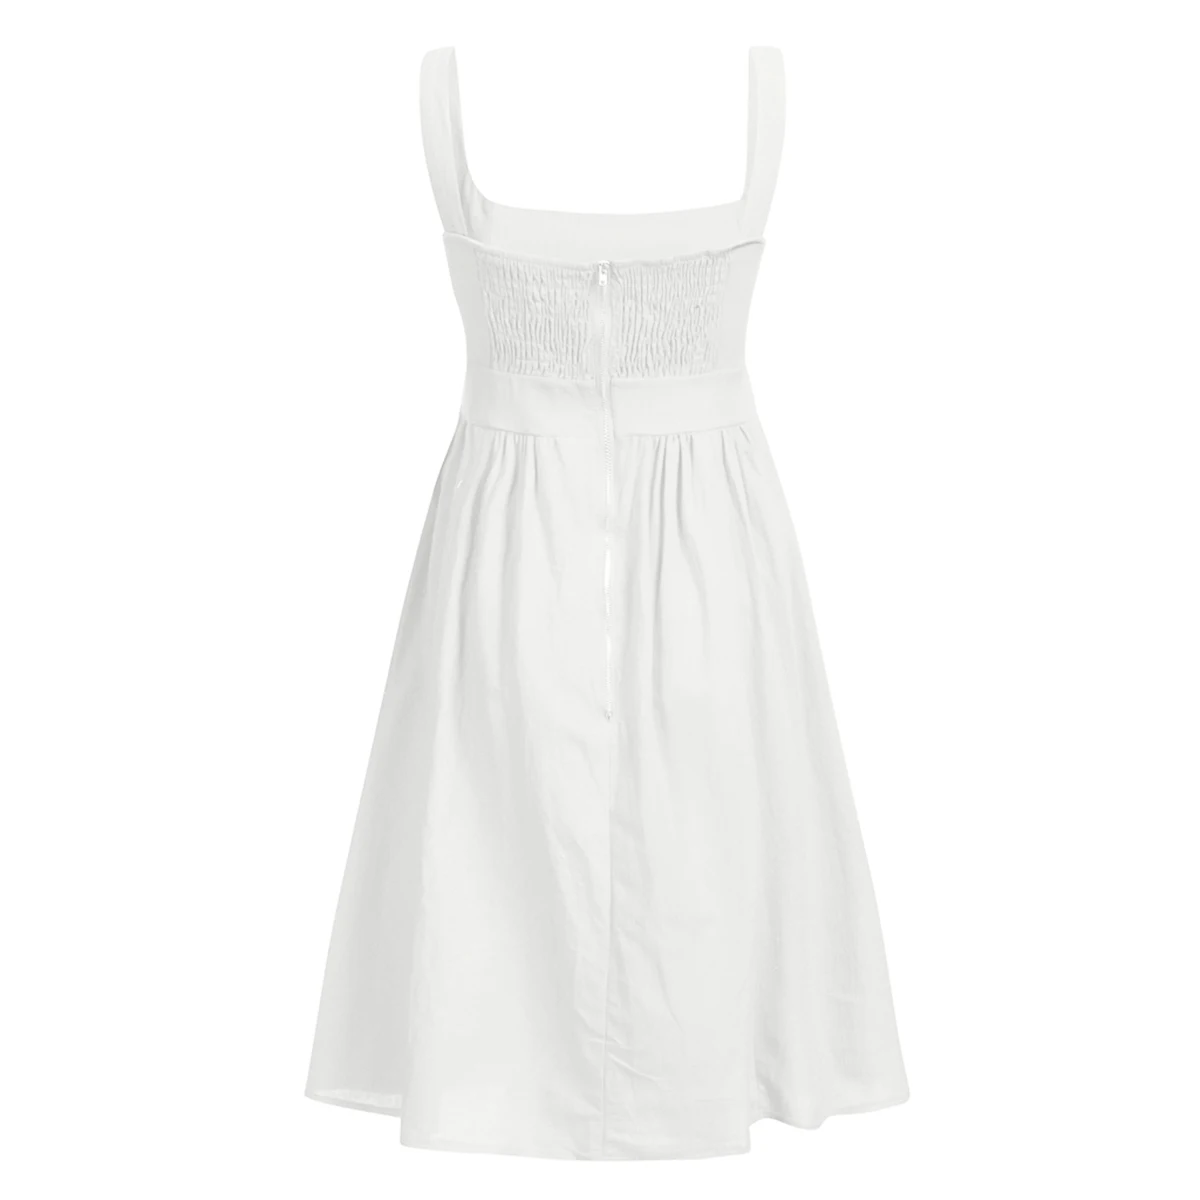 Для женщин Сплошной Low Cut квадратный воротник без рукавов майка платье миди с открытой спиной с карманом молния сзади пляжное платье - Цвет: White